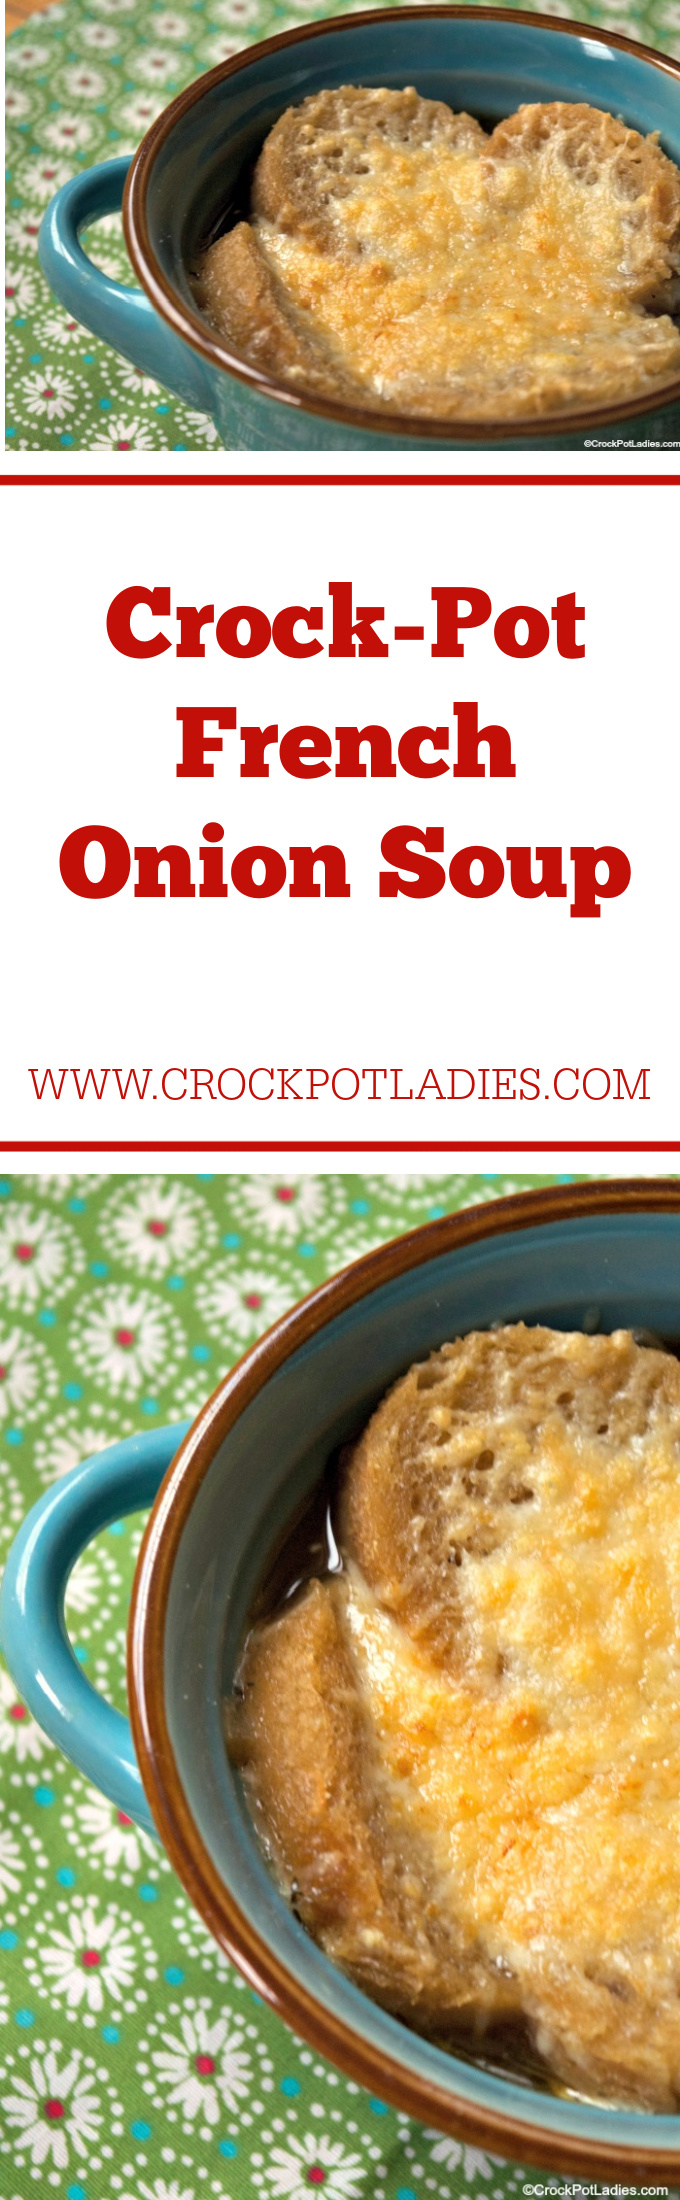 Crock-Pot French Onion Soup